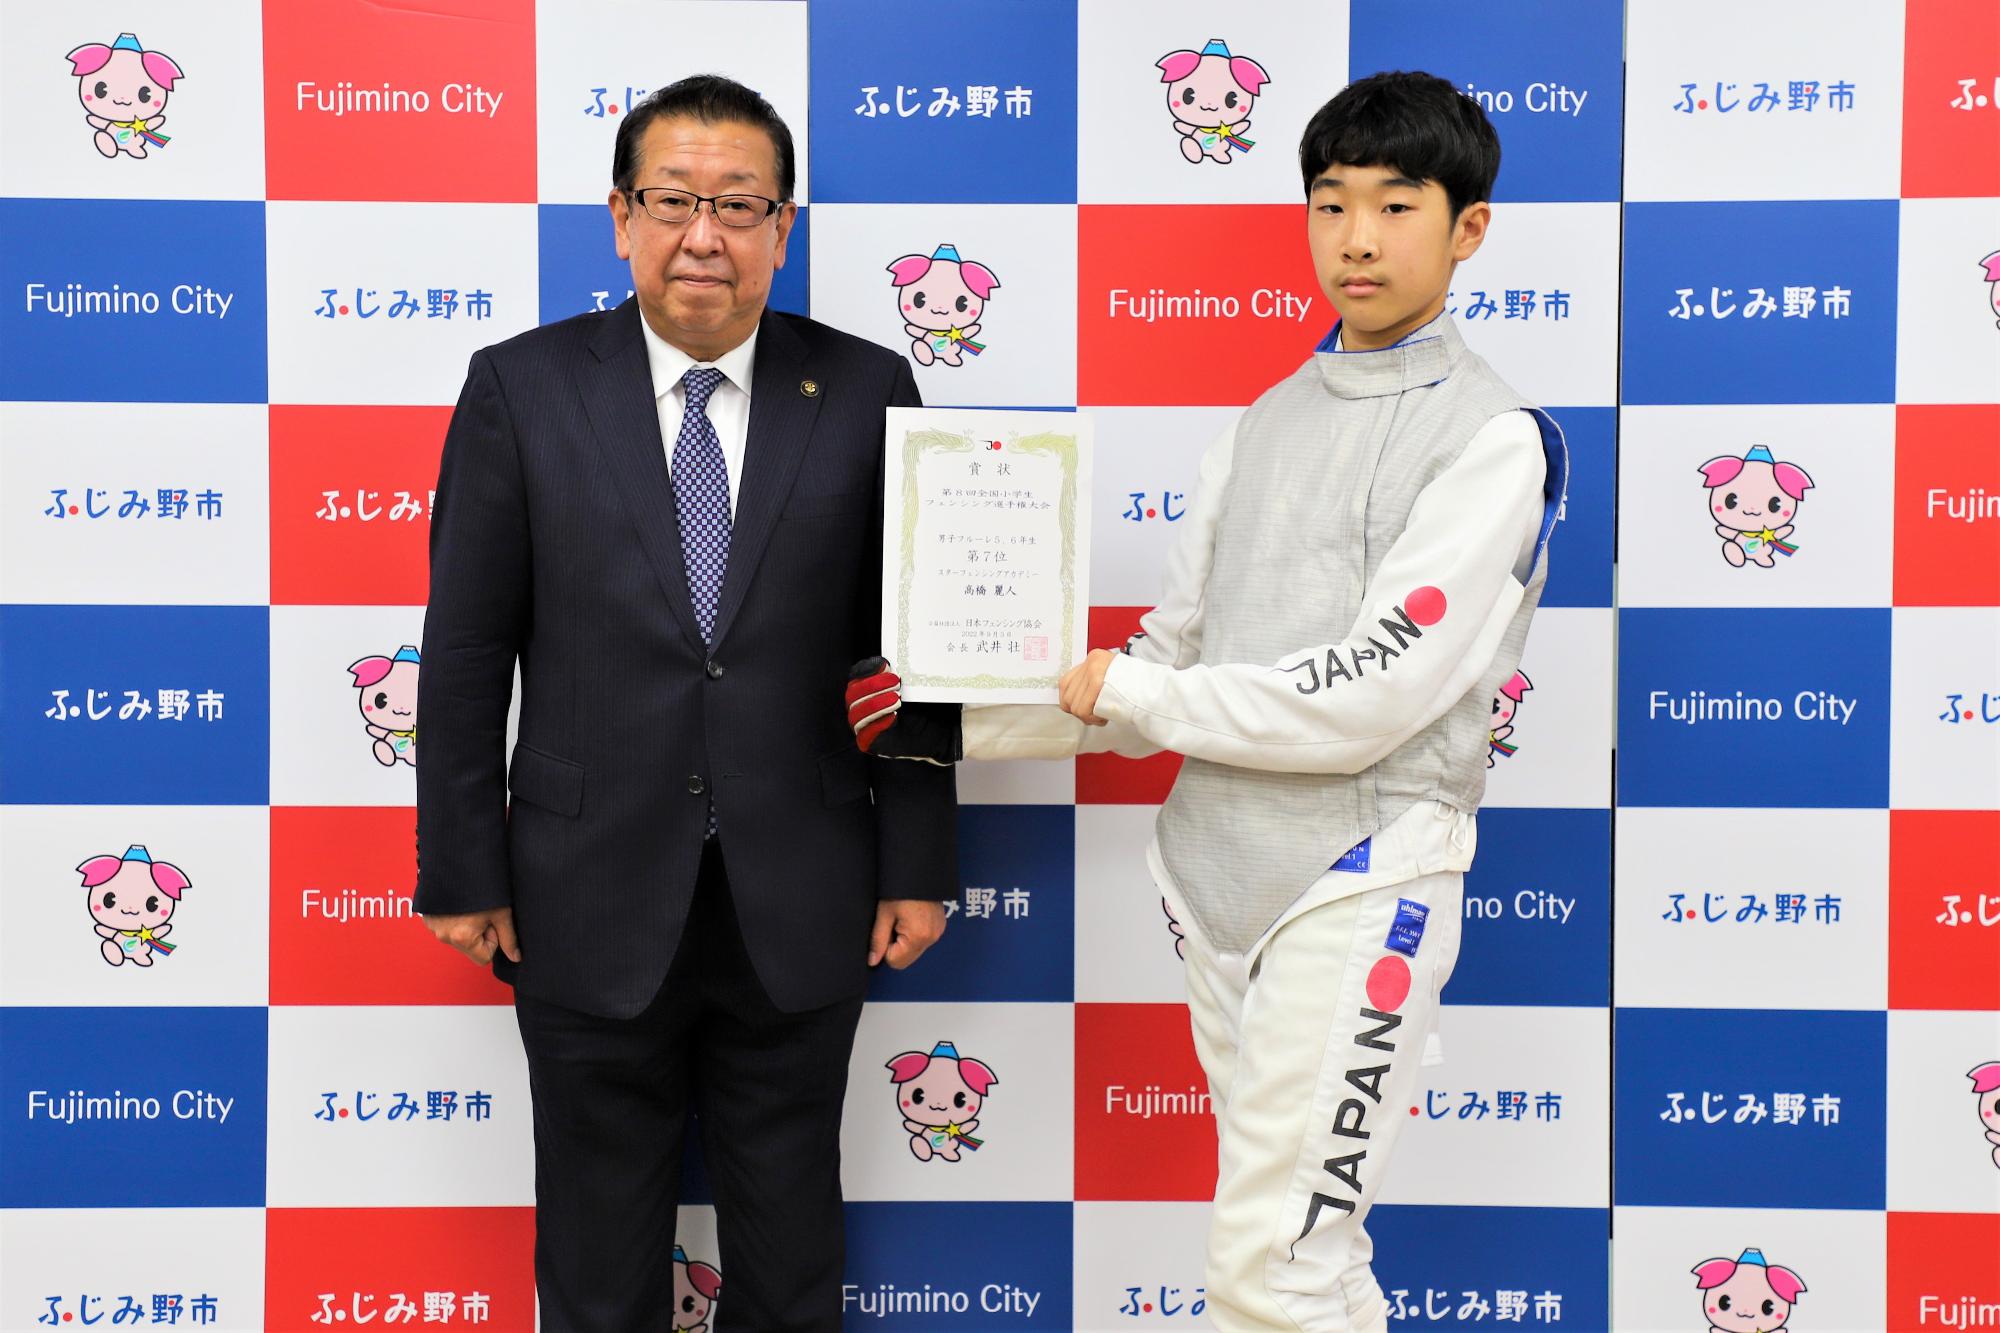 第8回全国小学生フェンシング選手権大会「男子フルーレ56」の種目で、見事7位に入賞された高橋麗人さん